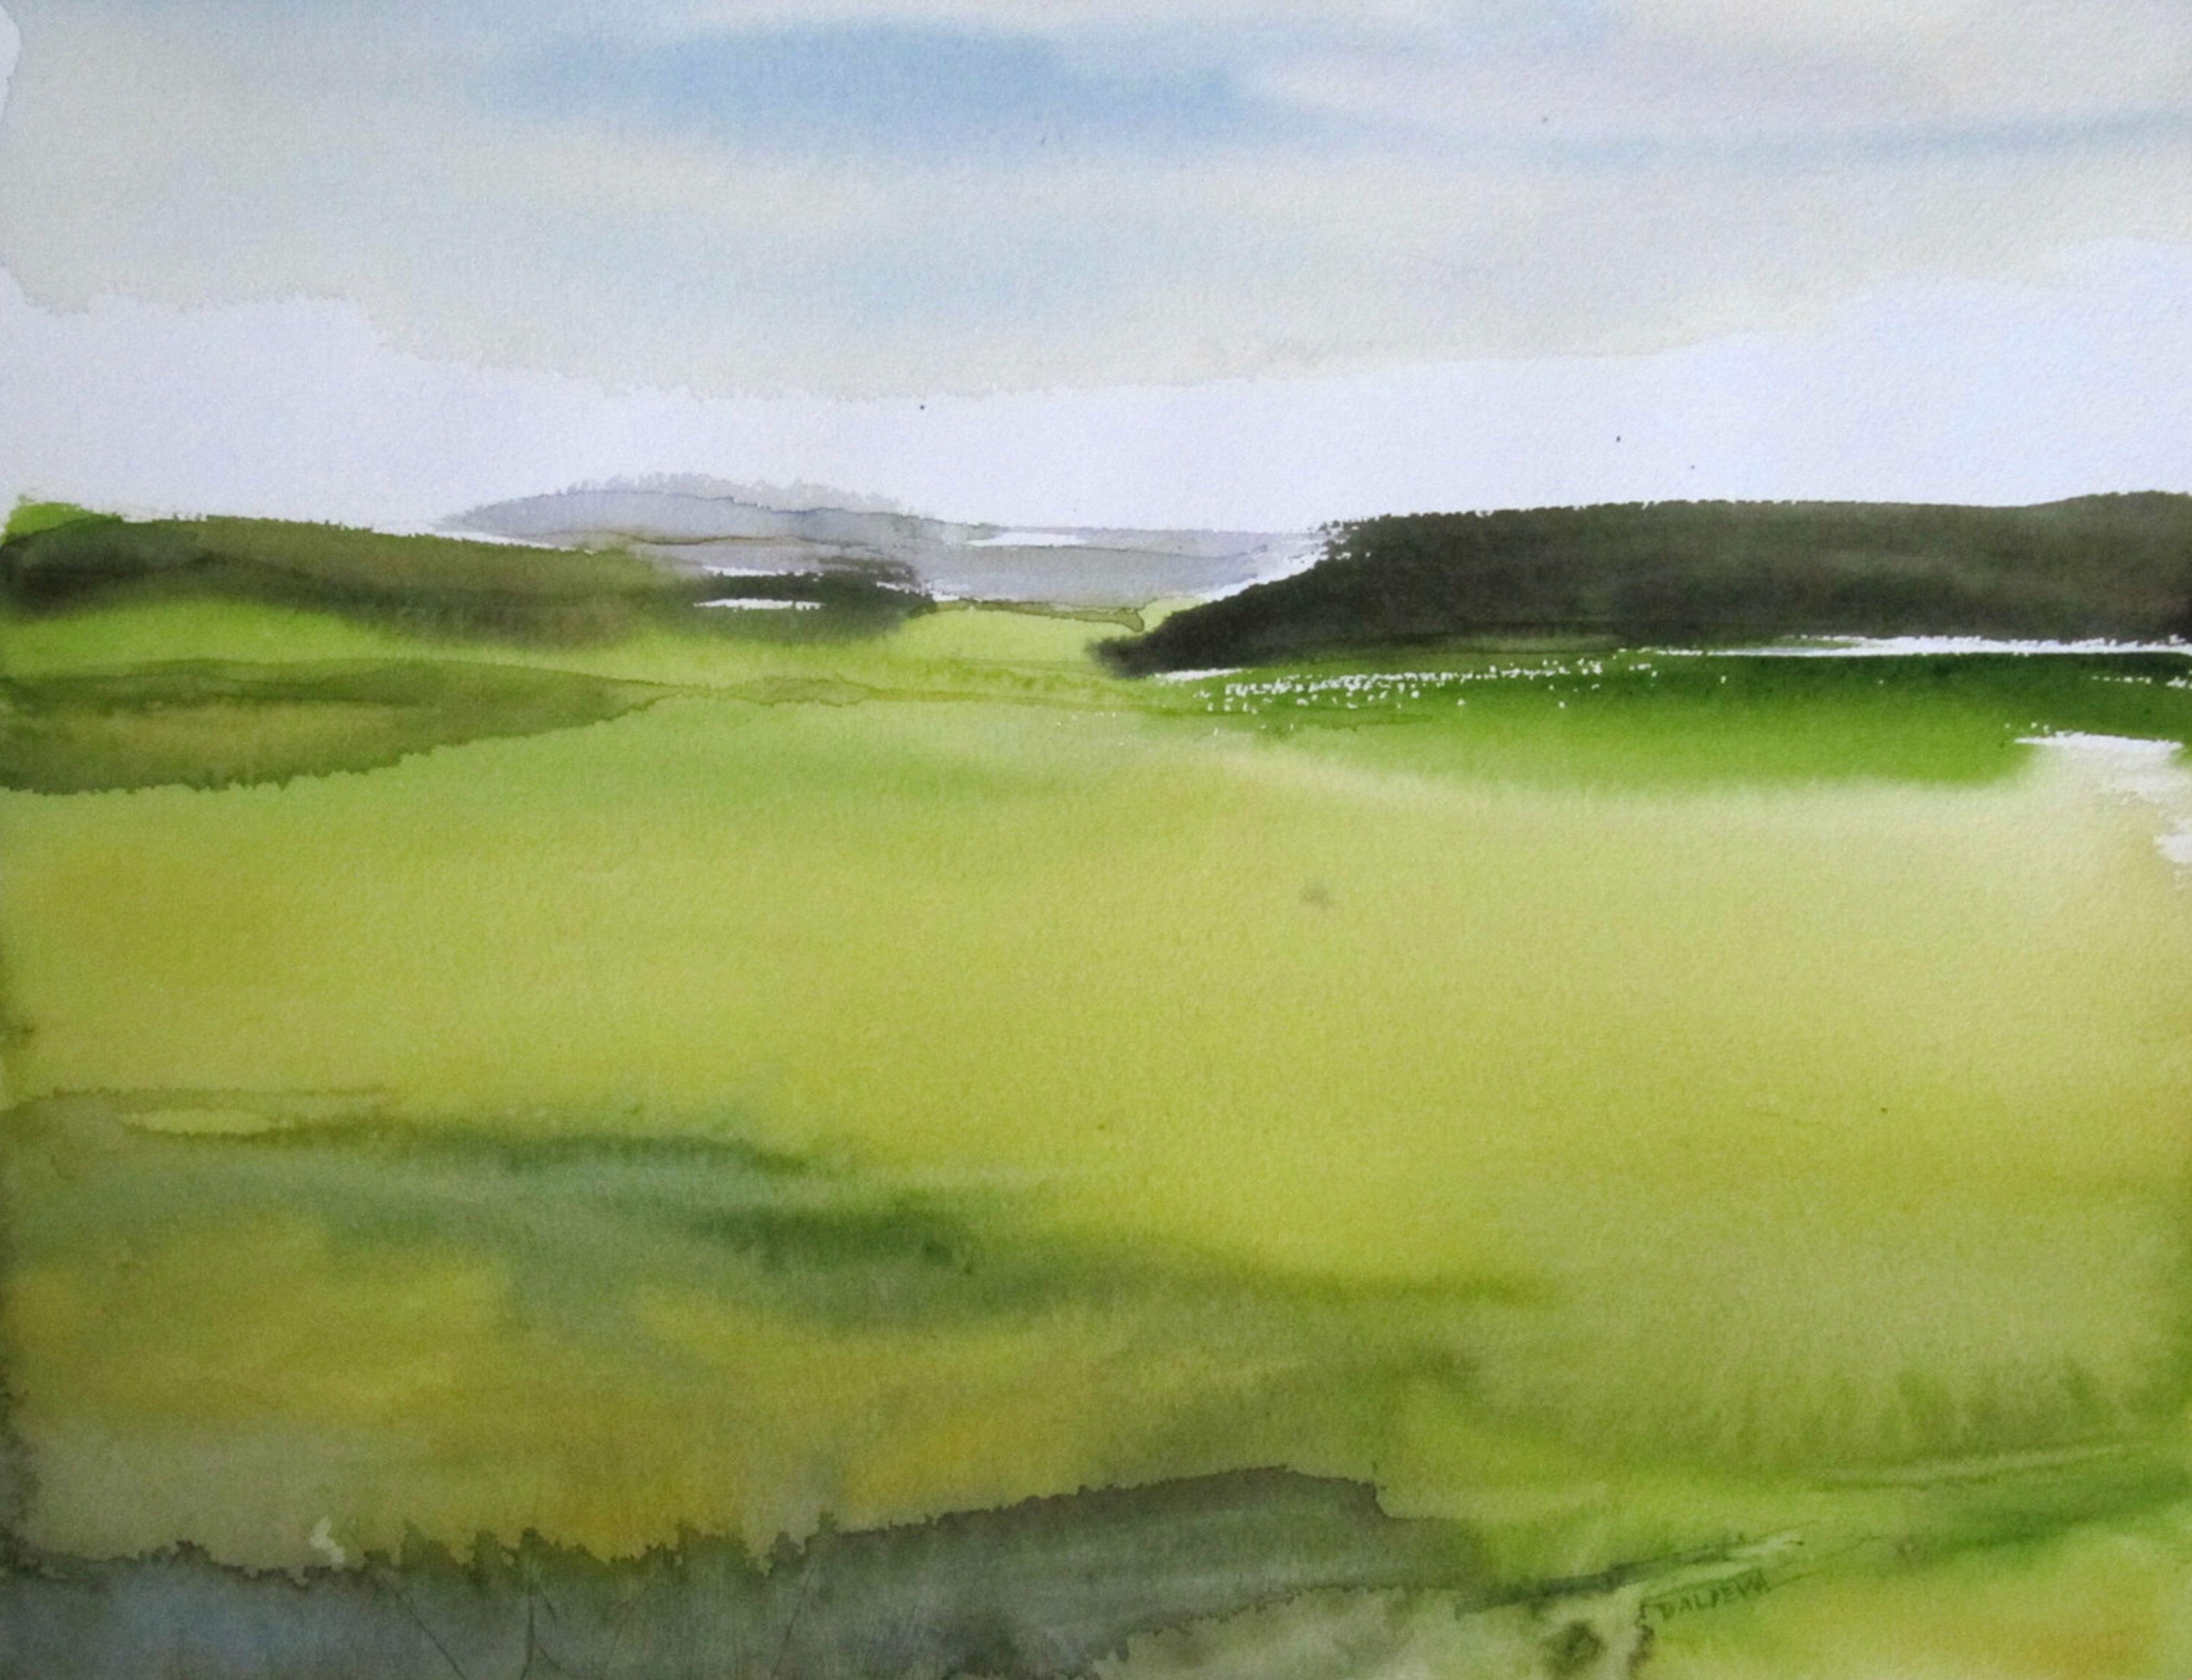 L'opera "Plaine" di Sylvia Baldeva mostra un paesaggio dipinto ad acquerello, una pianura, un cielo, un colore prevalentemente verde.